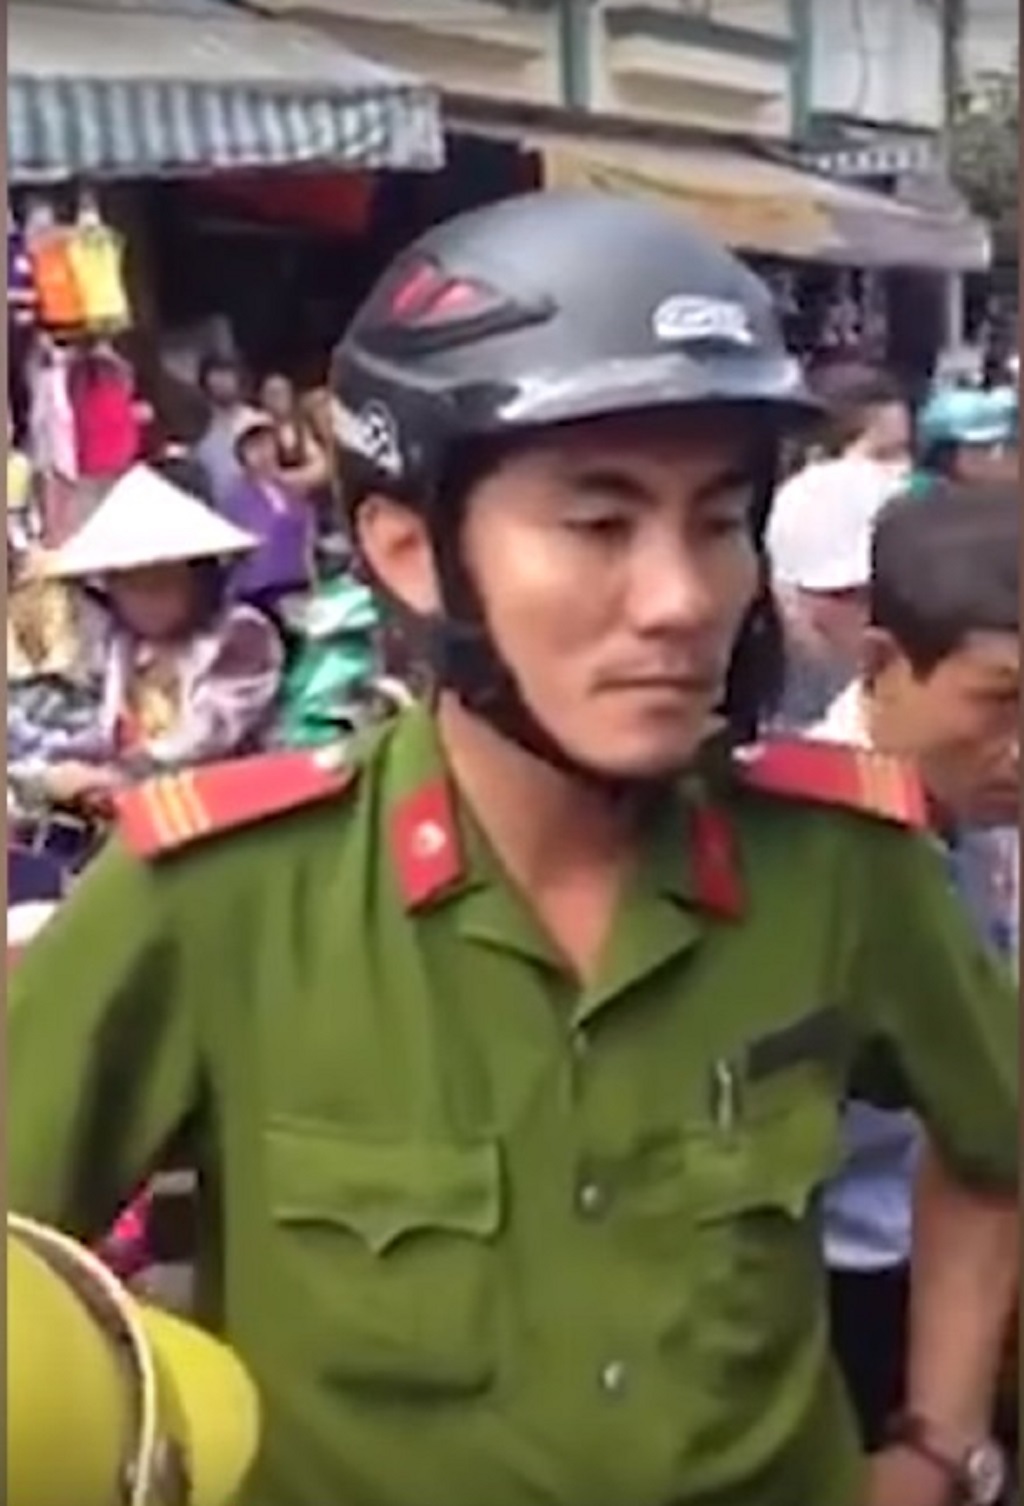 
Thượng sĩ Lương Việt Hà - người xuất hiện trong clip
